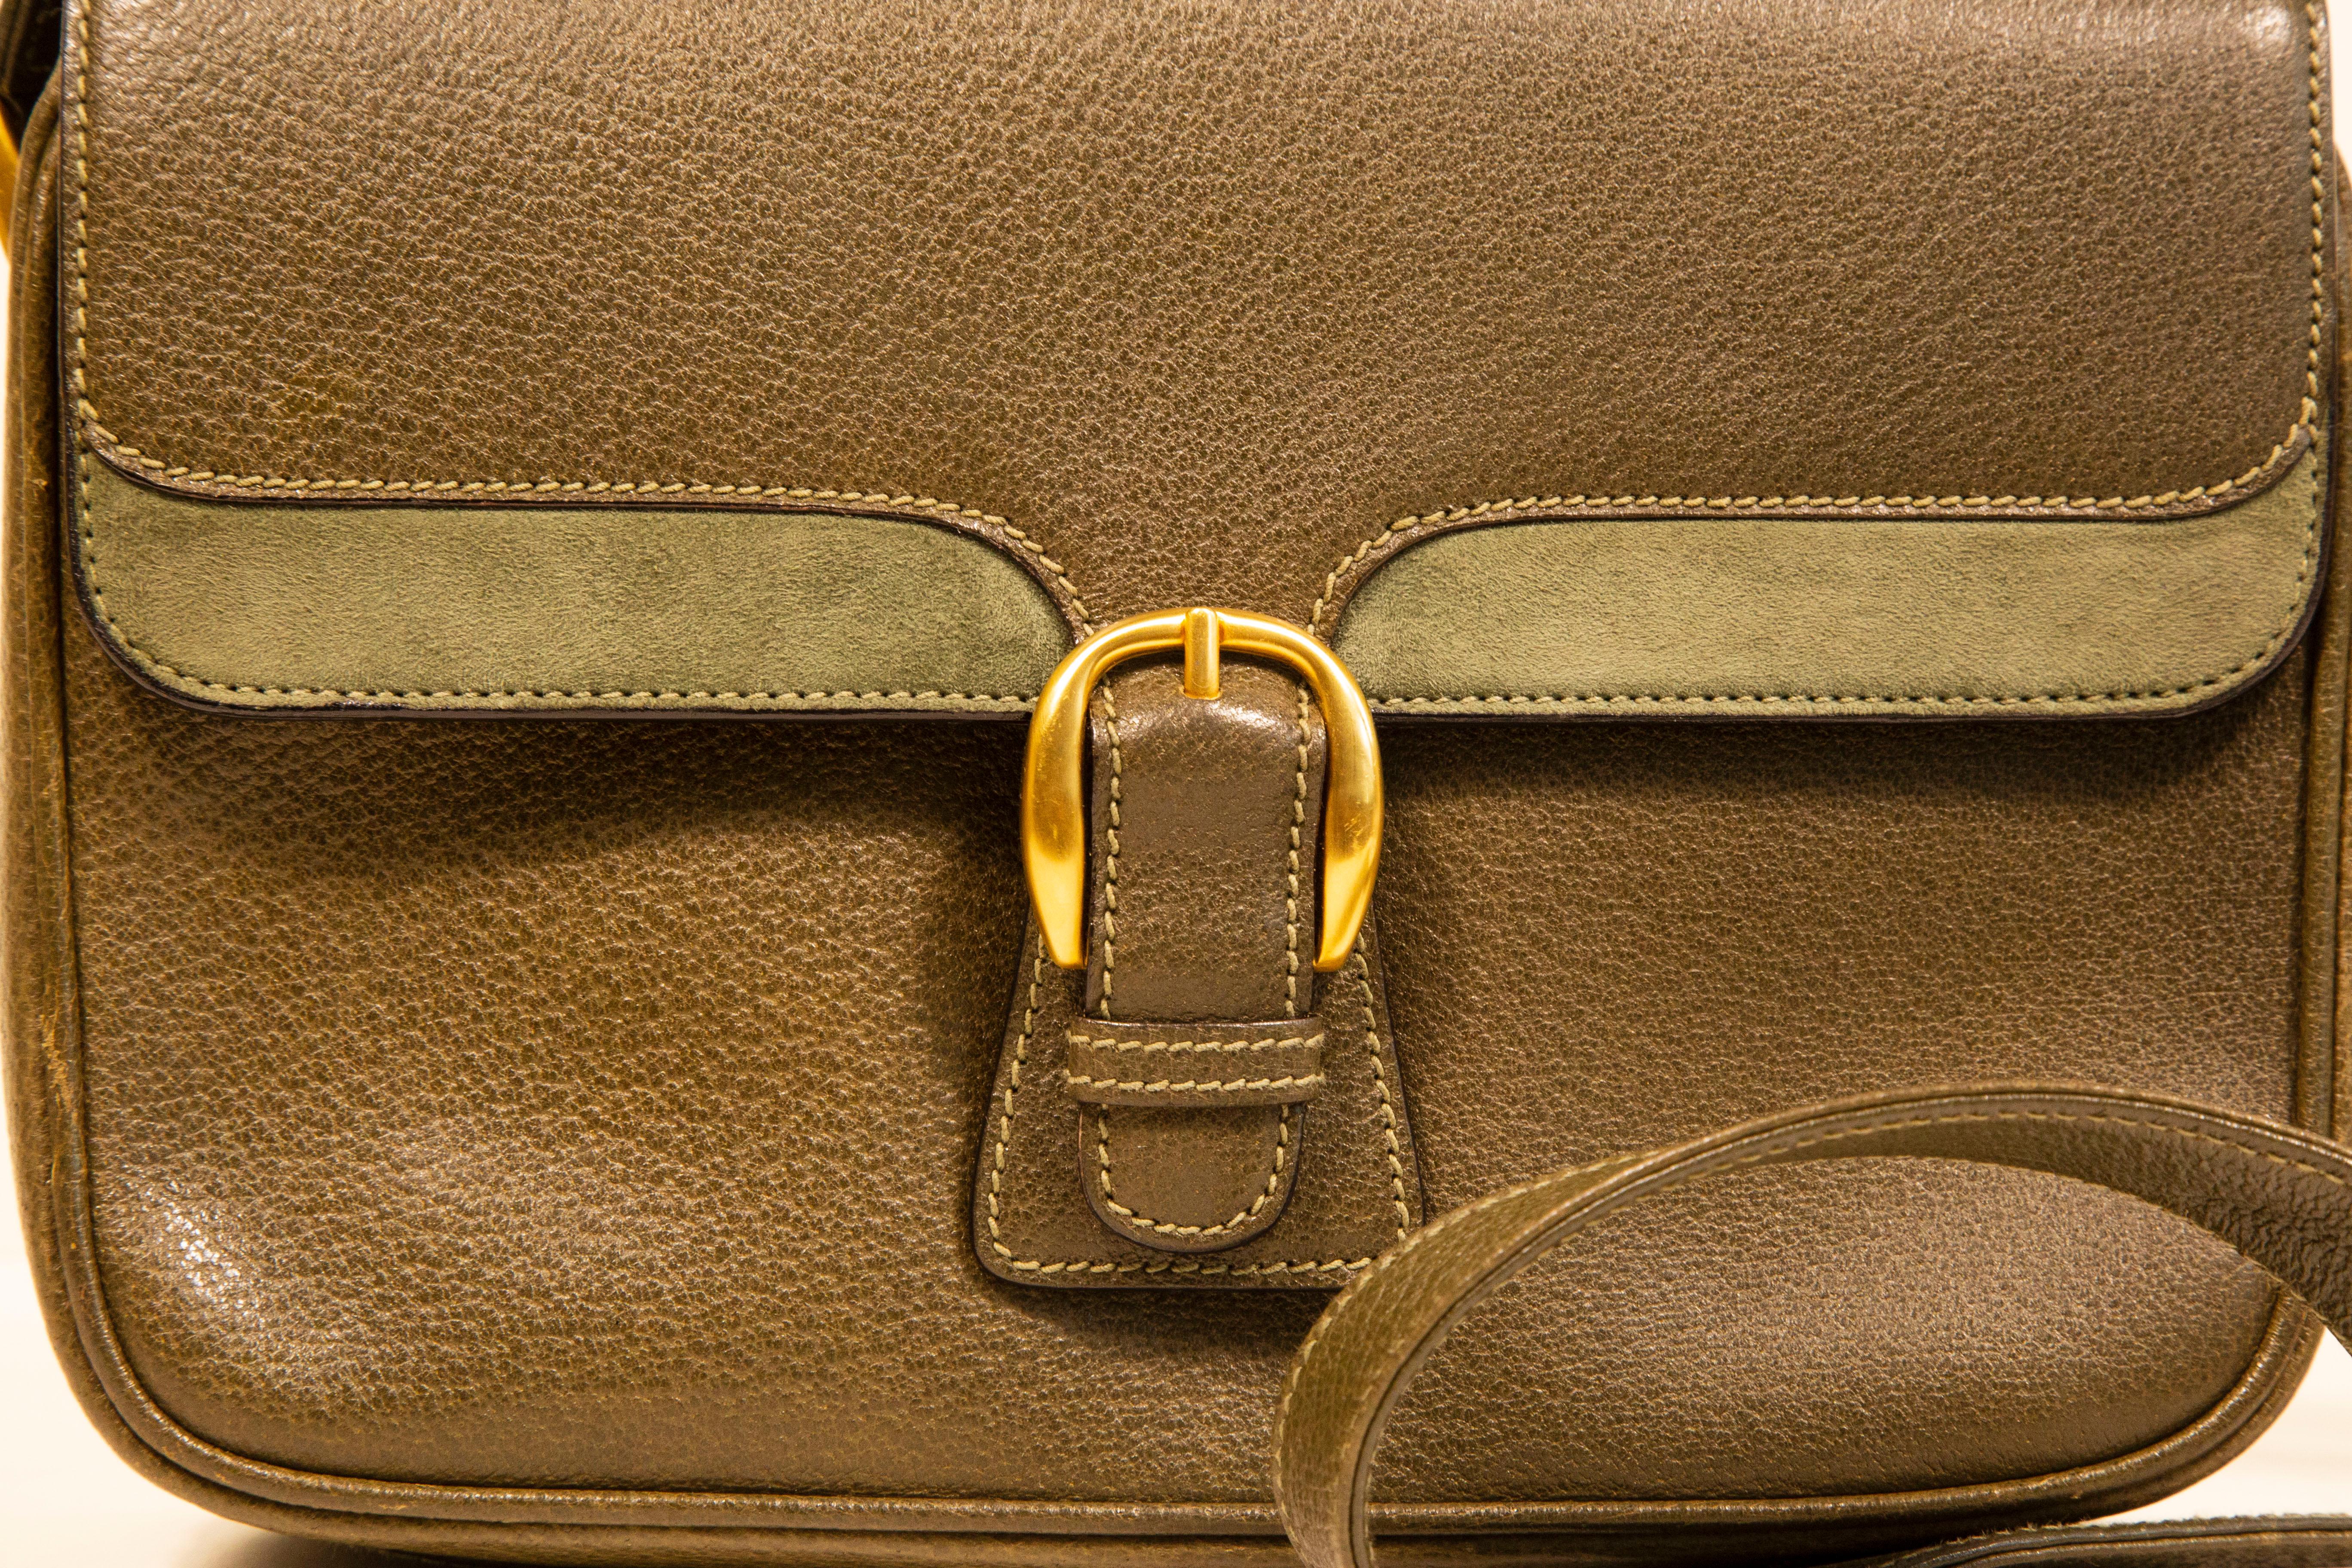 Un sac à bandoulière Gucci vintage. Le sac est réalisé en cuir vert olive légèrement texturé avec application de daim vert sur le rabat avant, et des ferrures dorées. L'intérieur est doublé de cuir marron et, à côté du compartiment principal, il